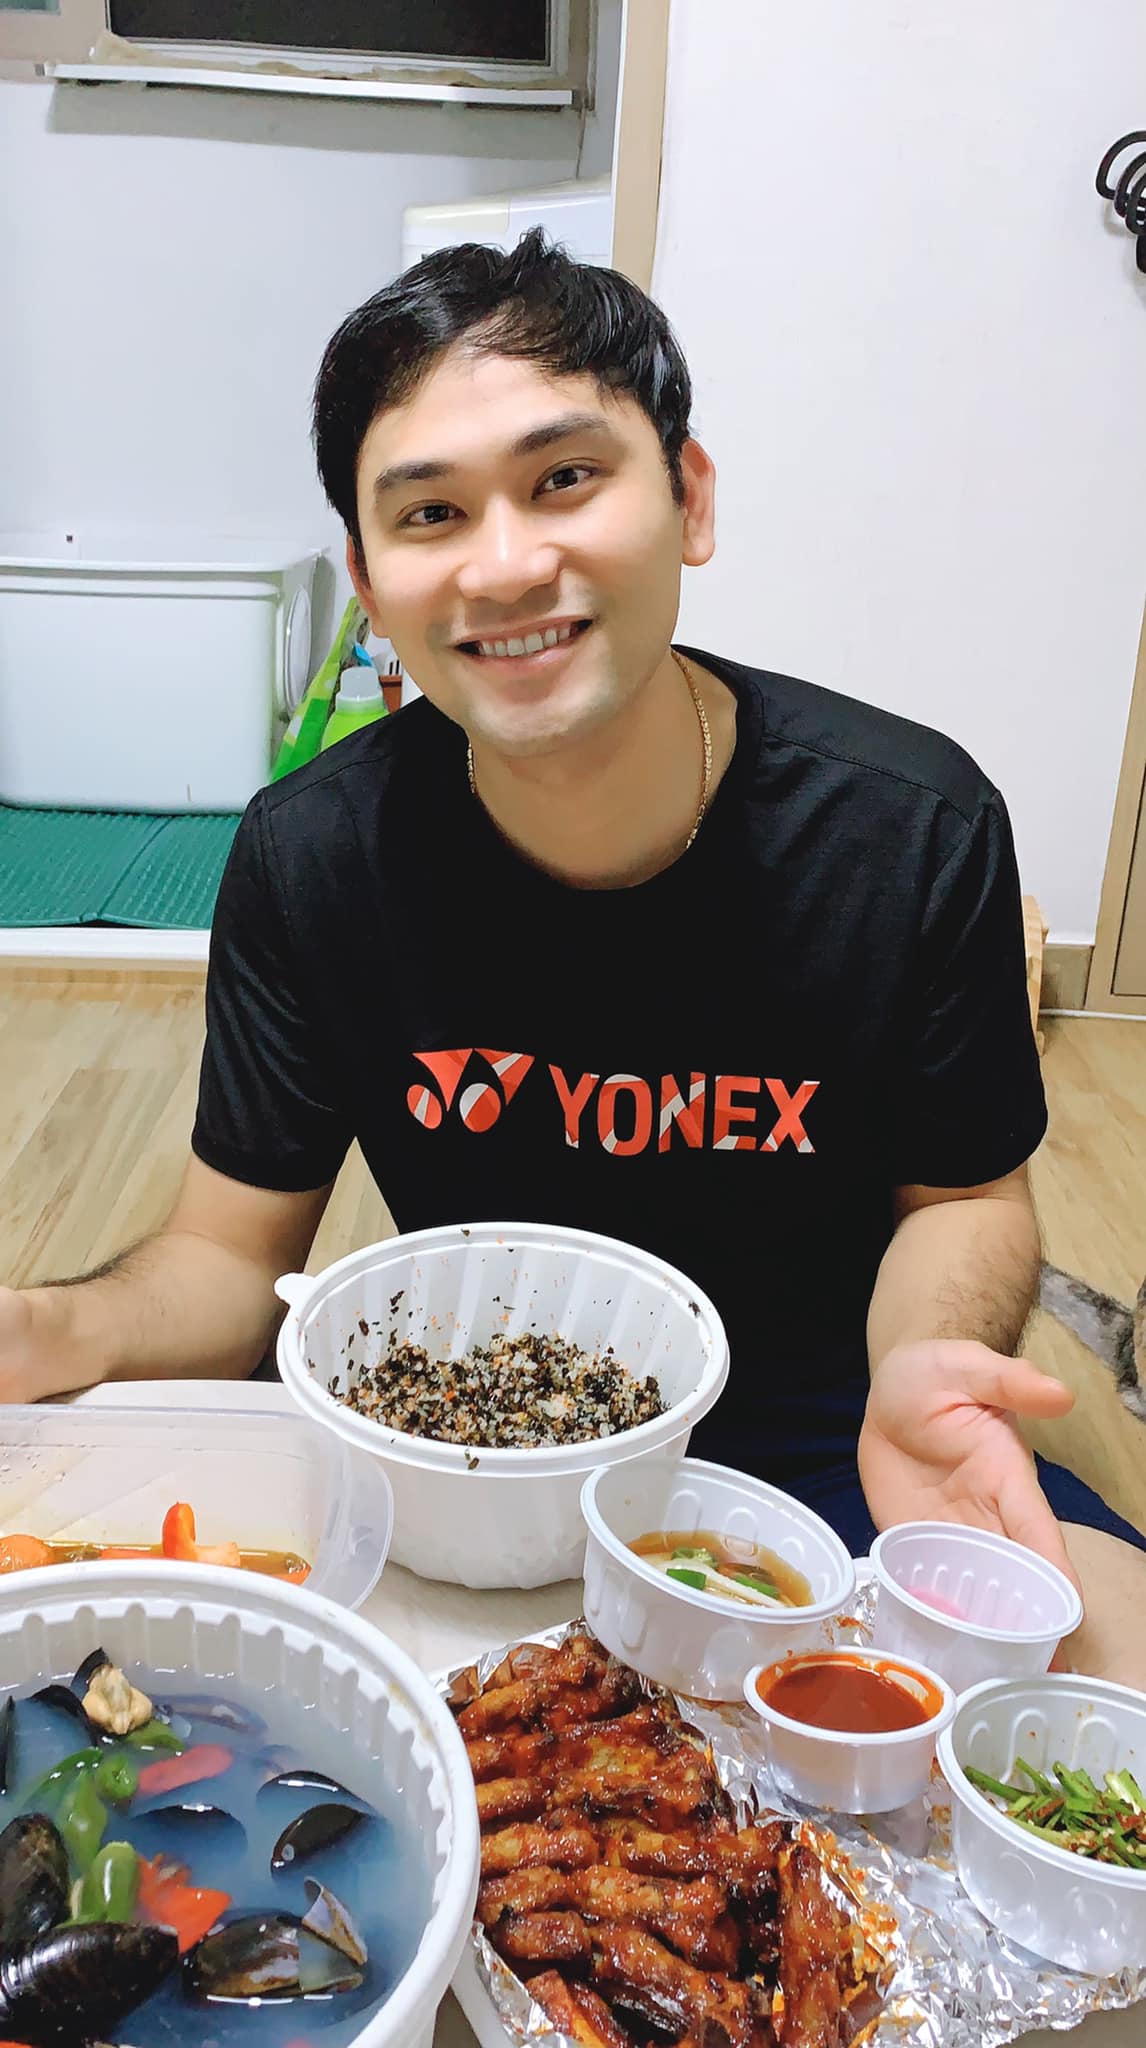 Tiêu Hoàng Minh - Anh chàng TikToker với 11 năm sinh sống tại Hàn Quốc: Chỉ mong một mâm cơm gia đình bên người thân